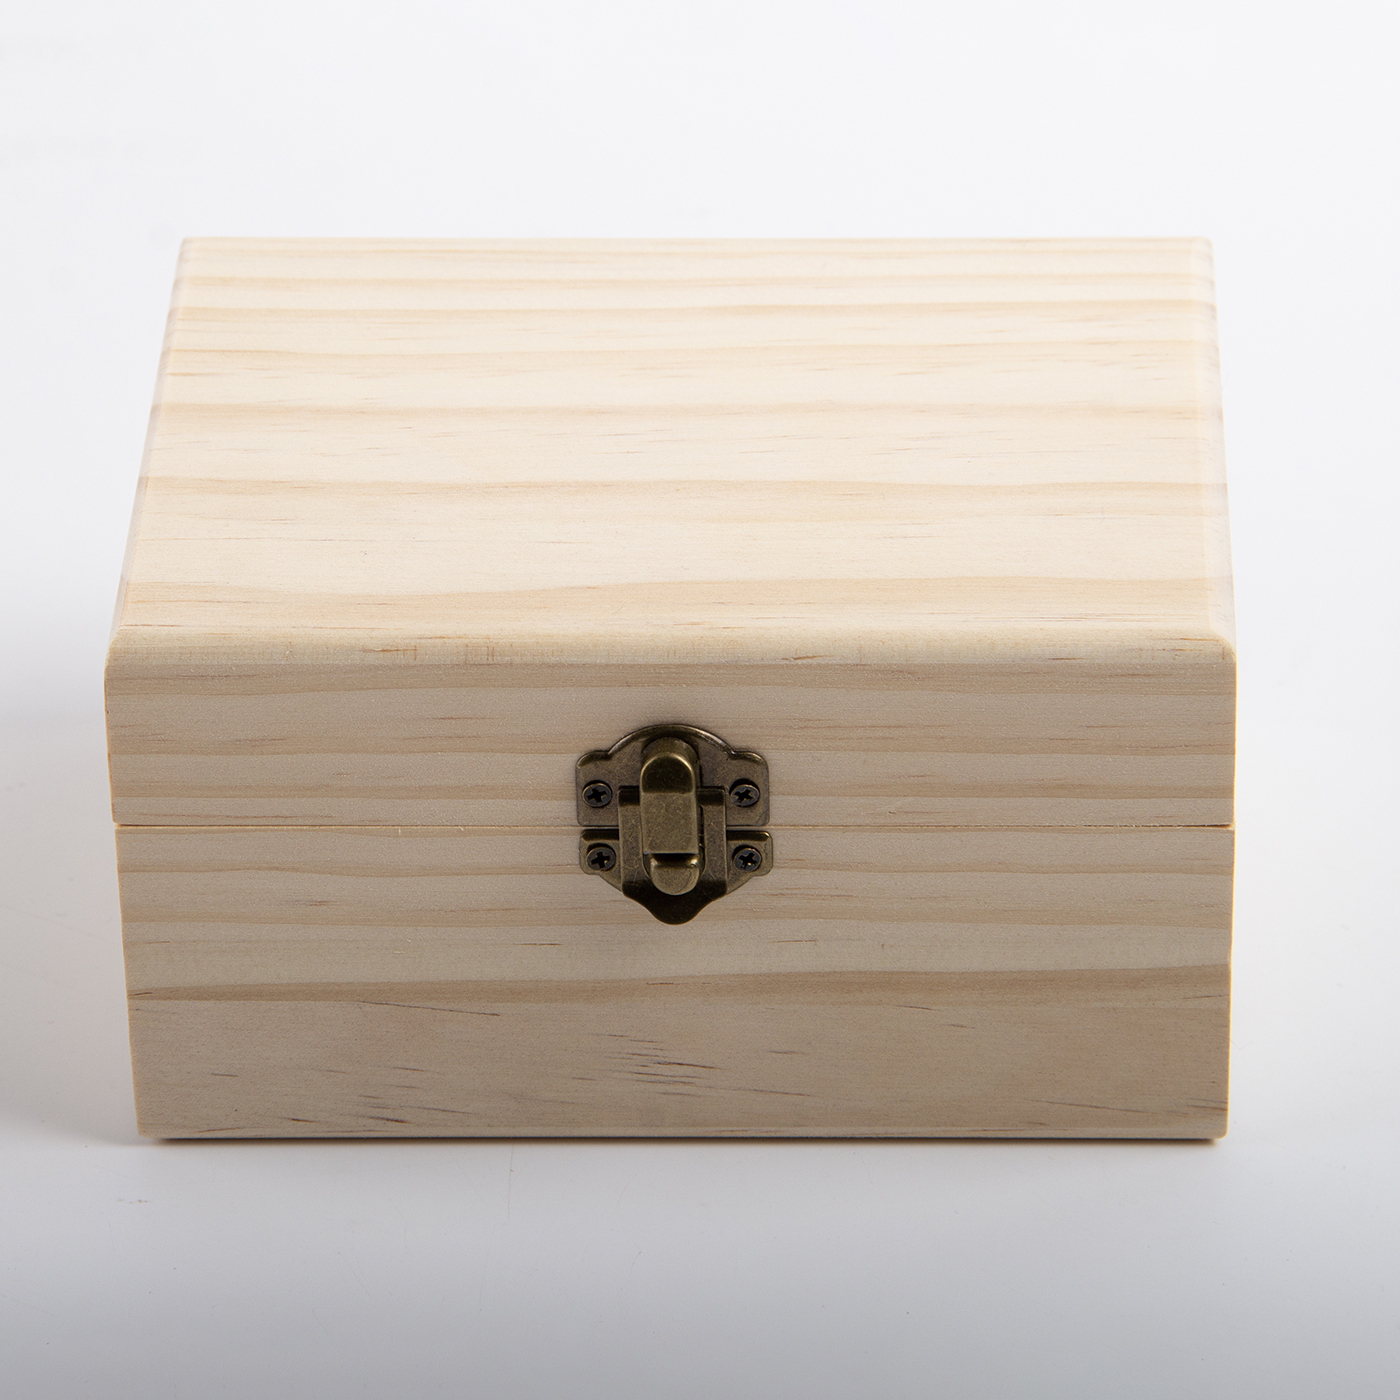 12 Slot Wooden Aromatherapy Oil Box3